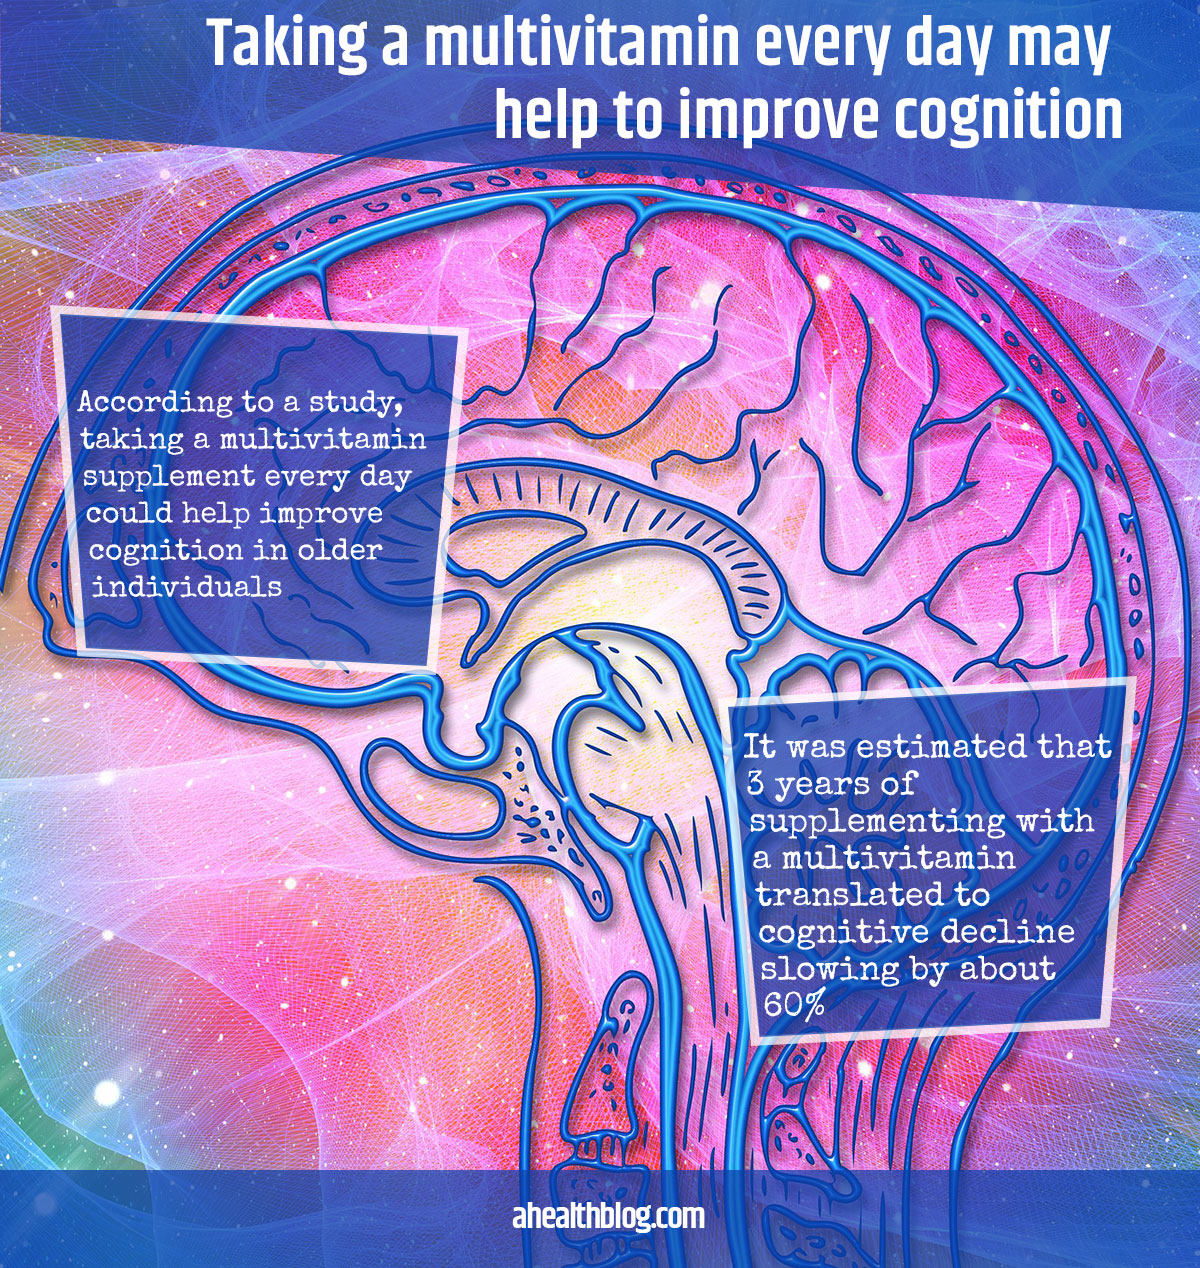 Die tägliche Einnahme eines Multivitamins kann helfen, die Kognition zu verbessern